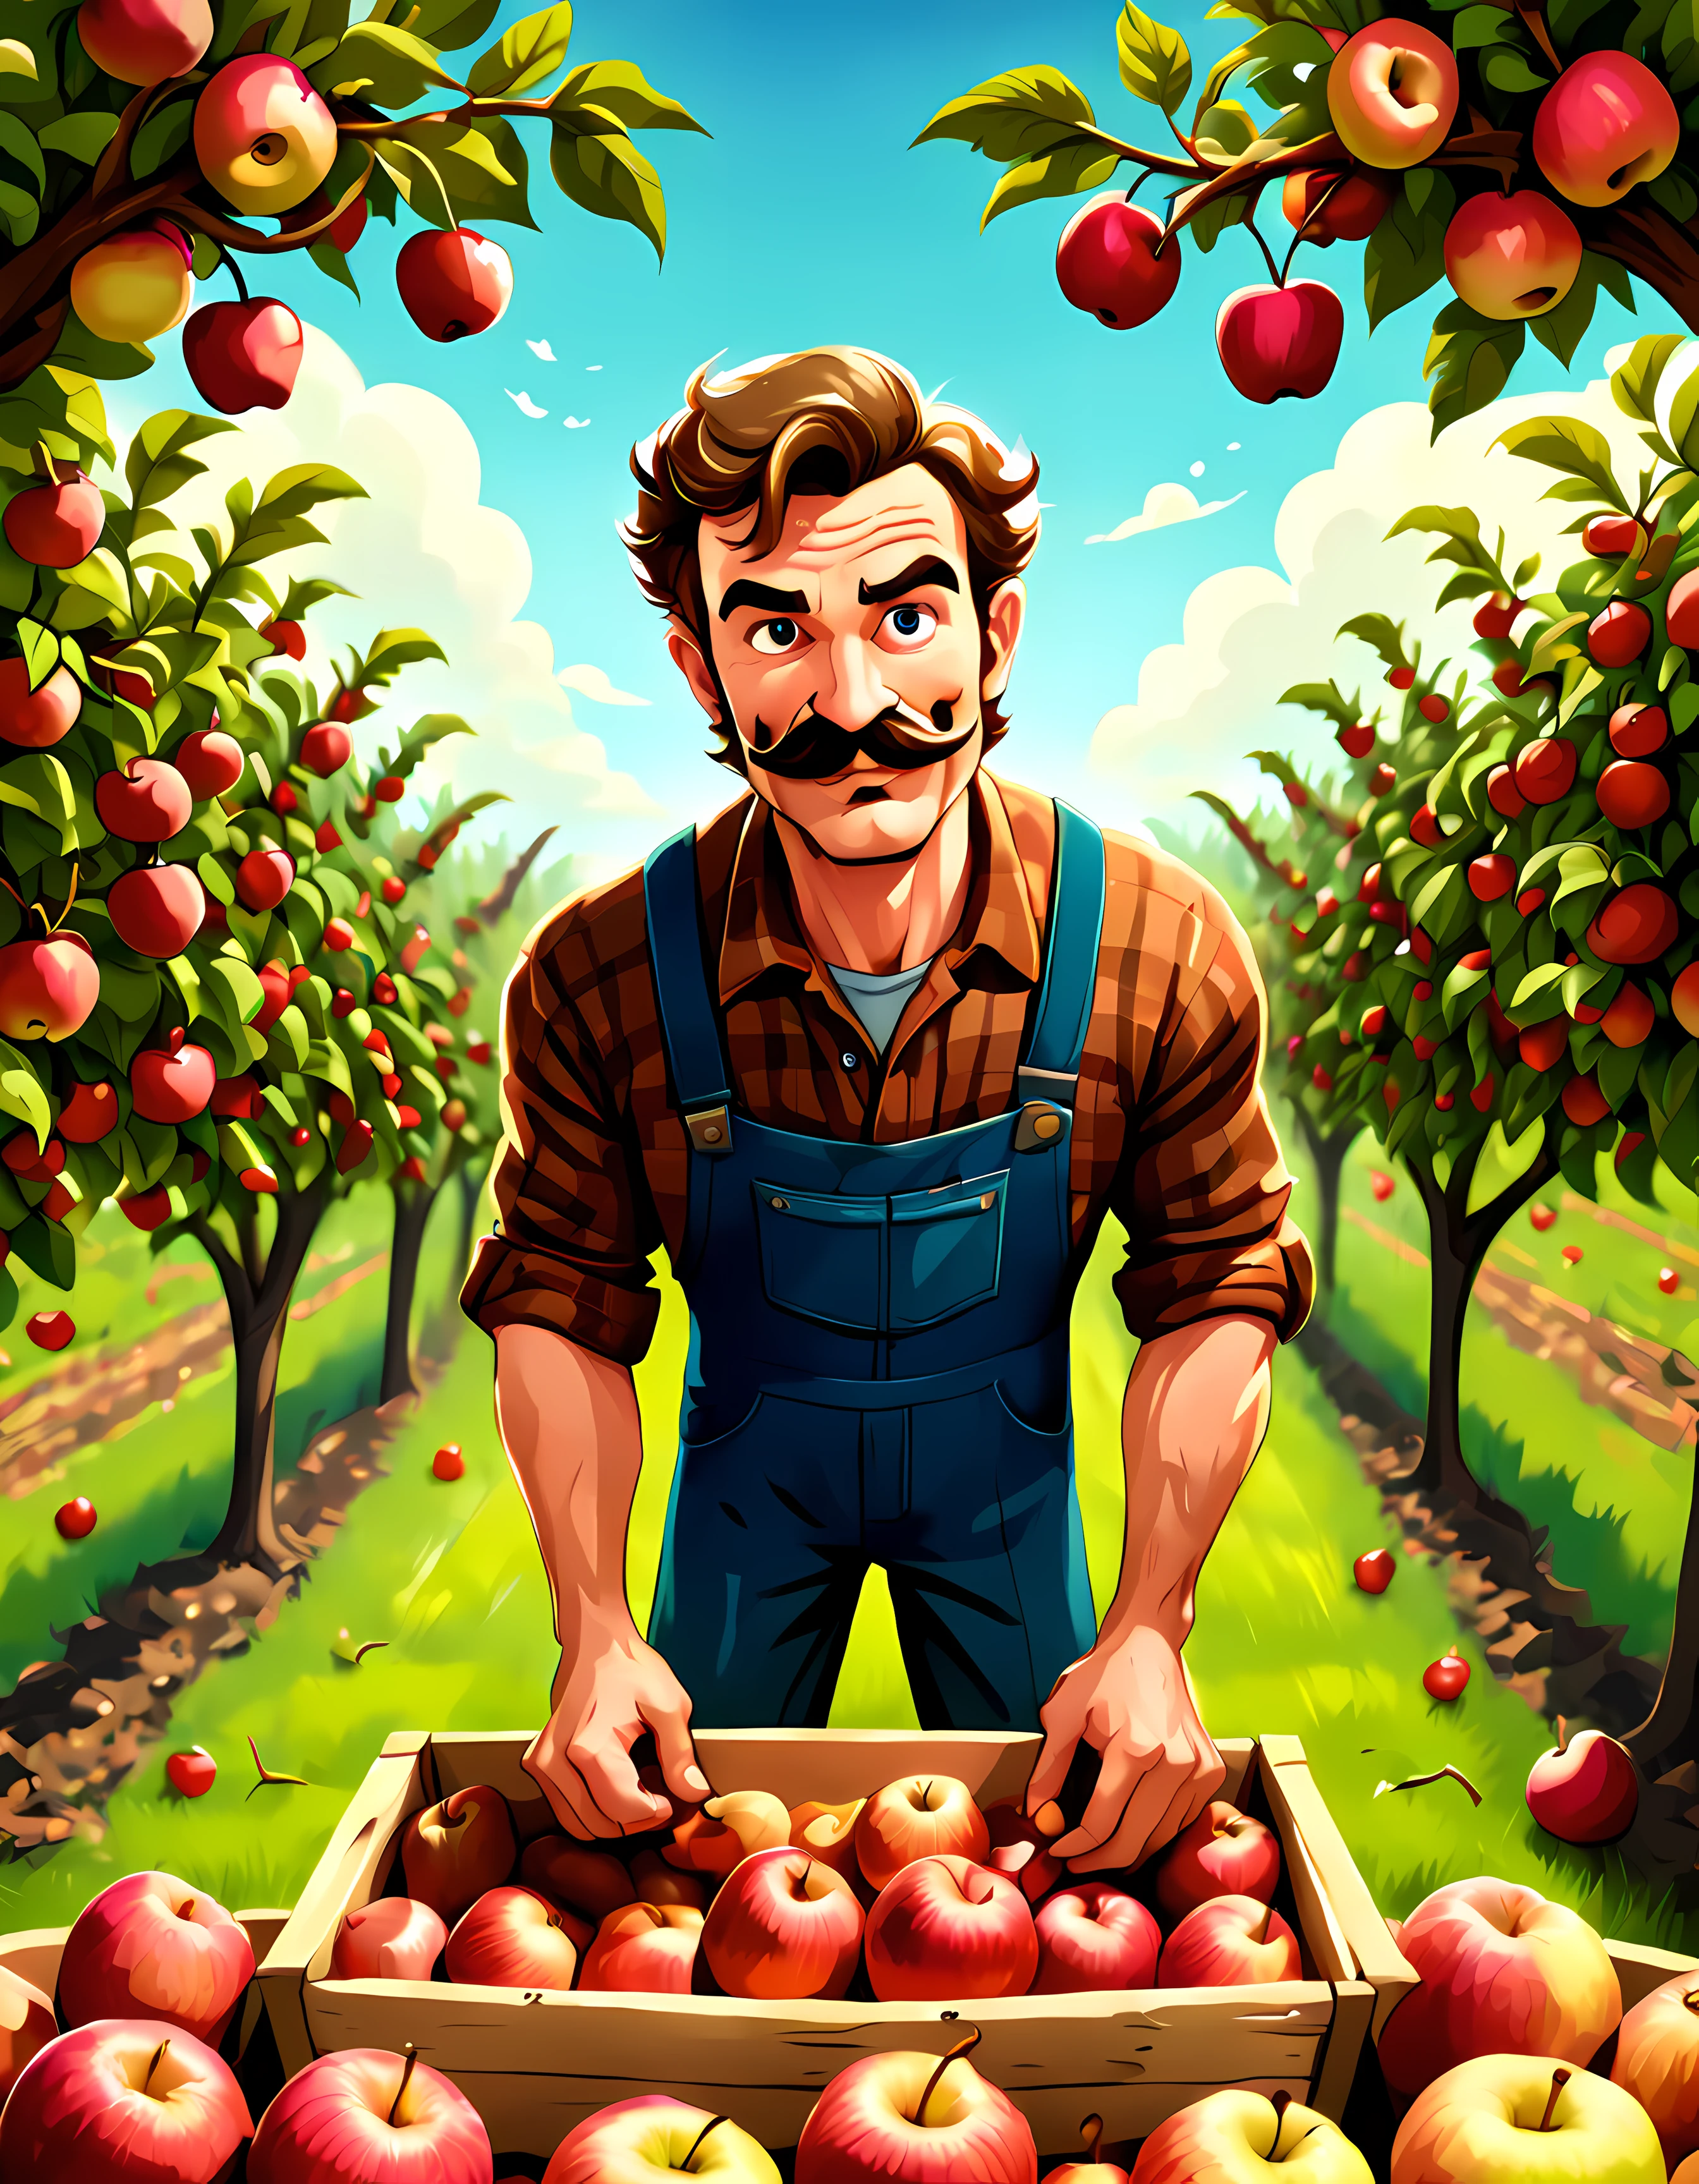 كارتون لطيف, CuteCartoonAF, (أسلوب الرسوم المتحركة لطيف:1.3), (وحيد:1.3), (عرض زاوية عالية:1.3), جميل (مزارع) ((حصاد)) التفاح الناضج من بستان وافر, شارب, رومانسي | أكثر_التفاصيل